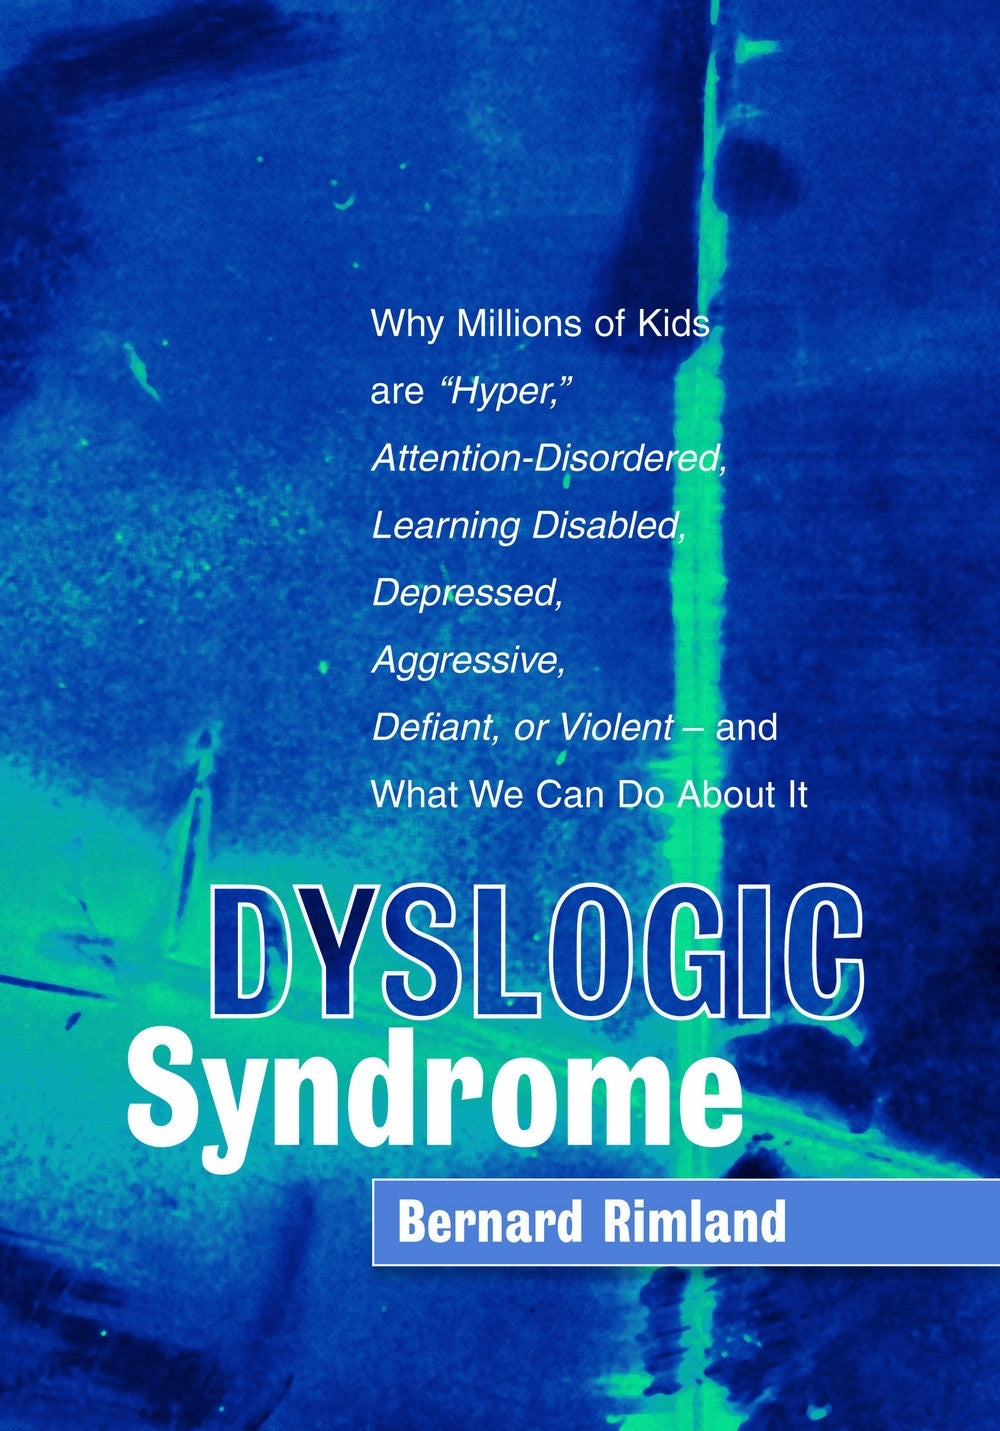 Dyslogic Syndrome by Bernard Rimland